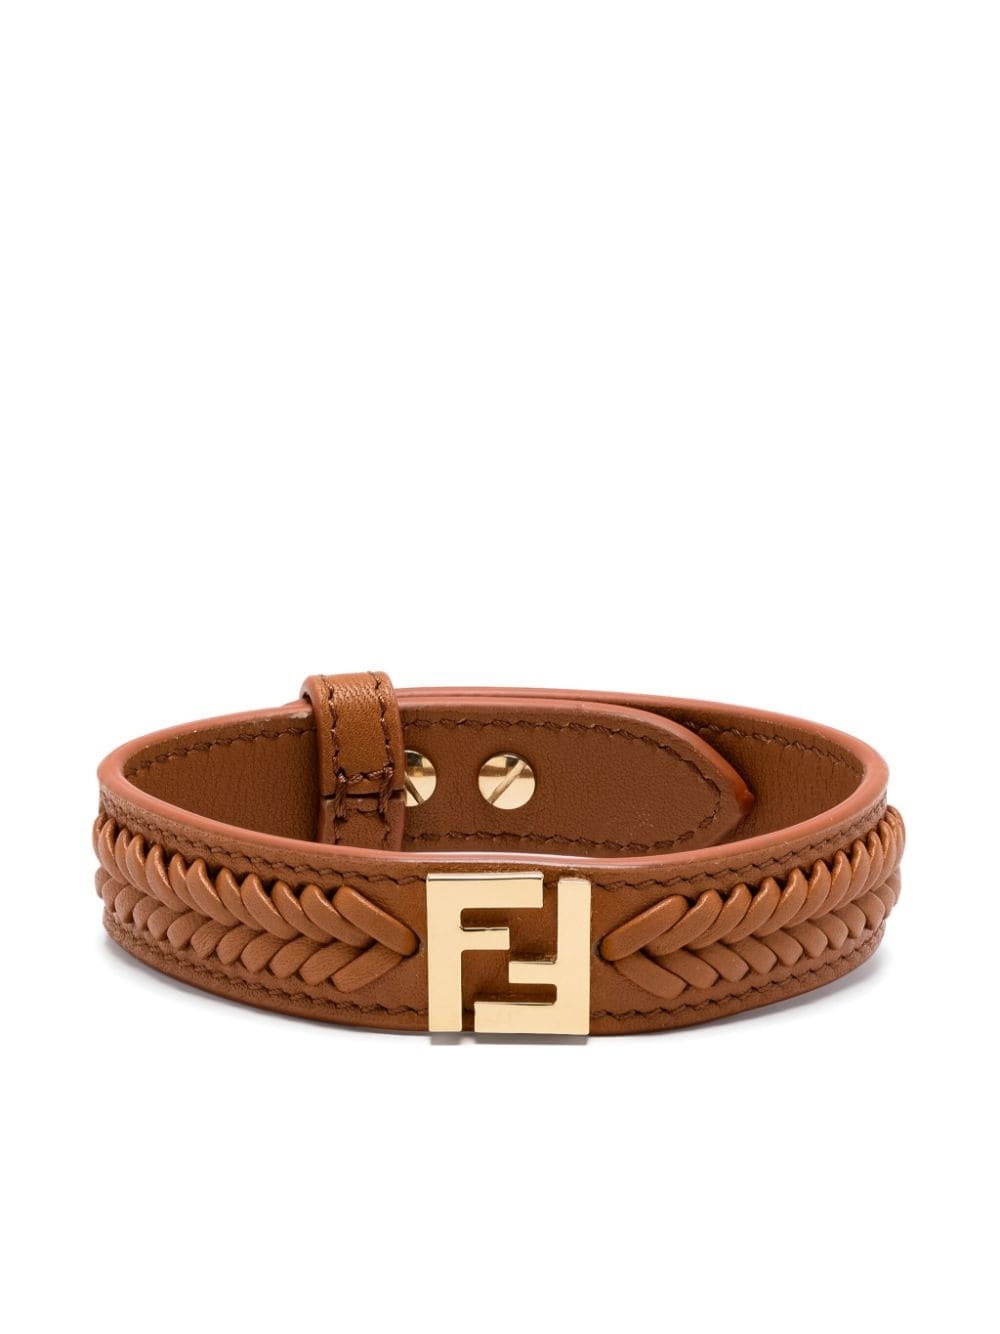 Forever Fendi bracelet - 1